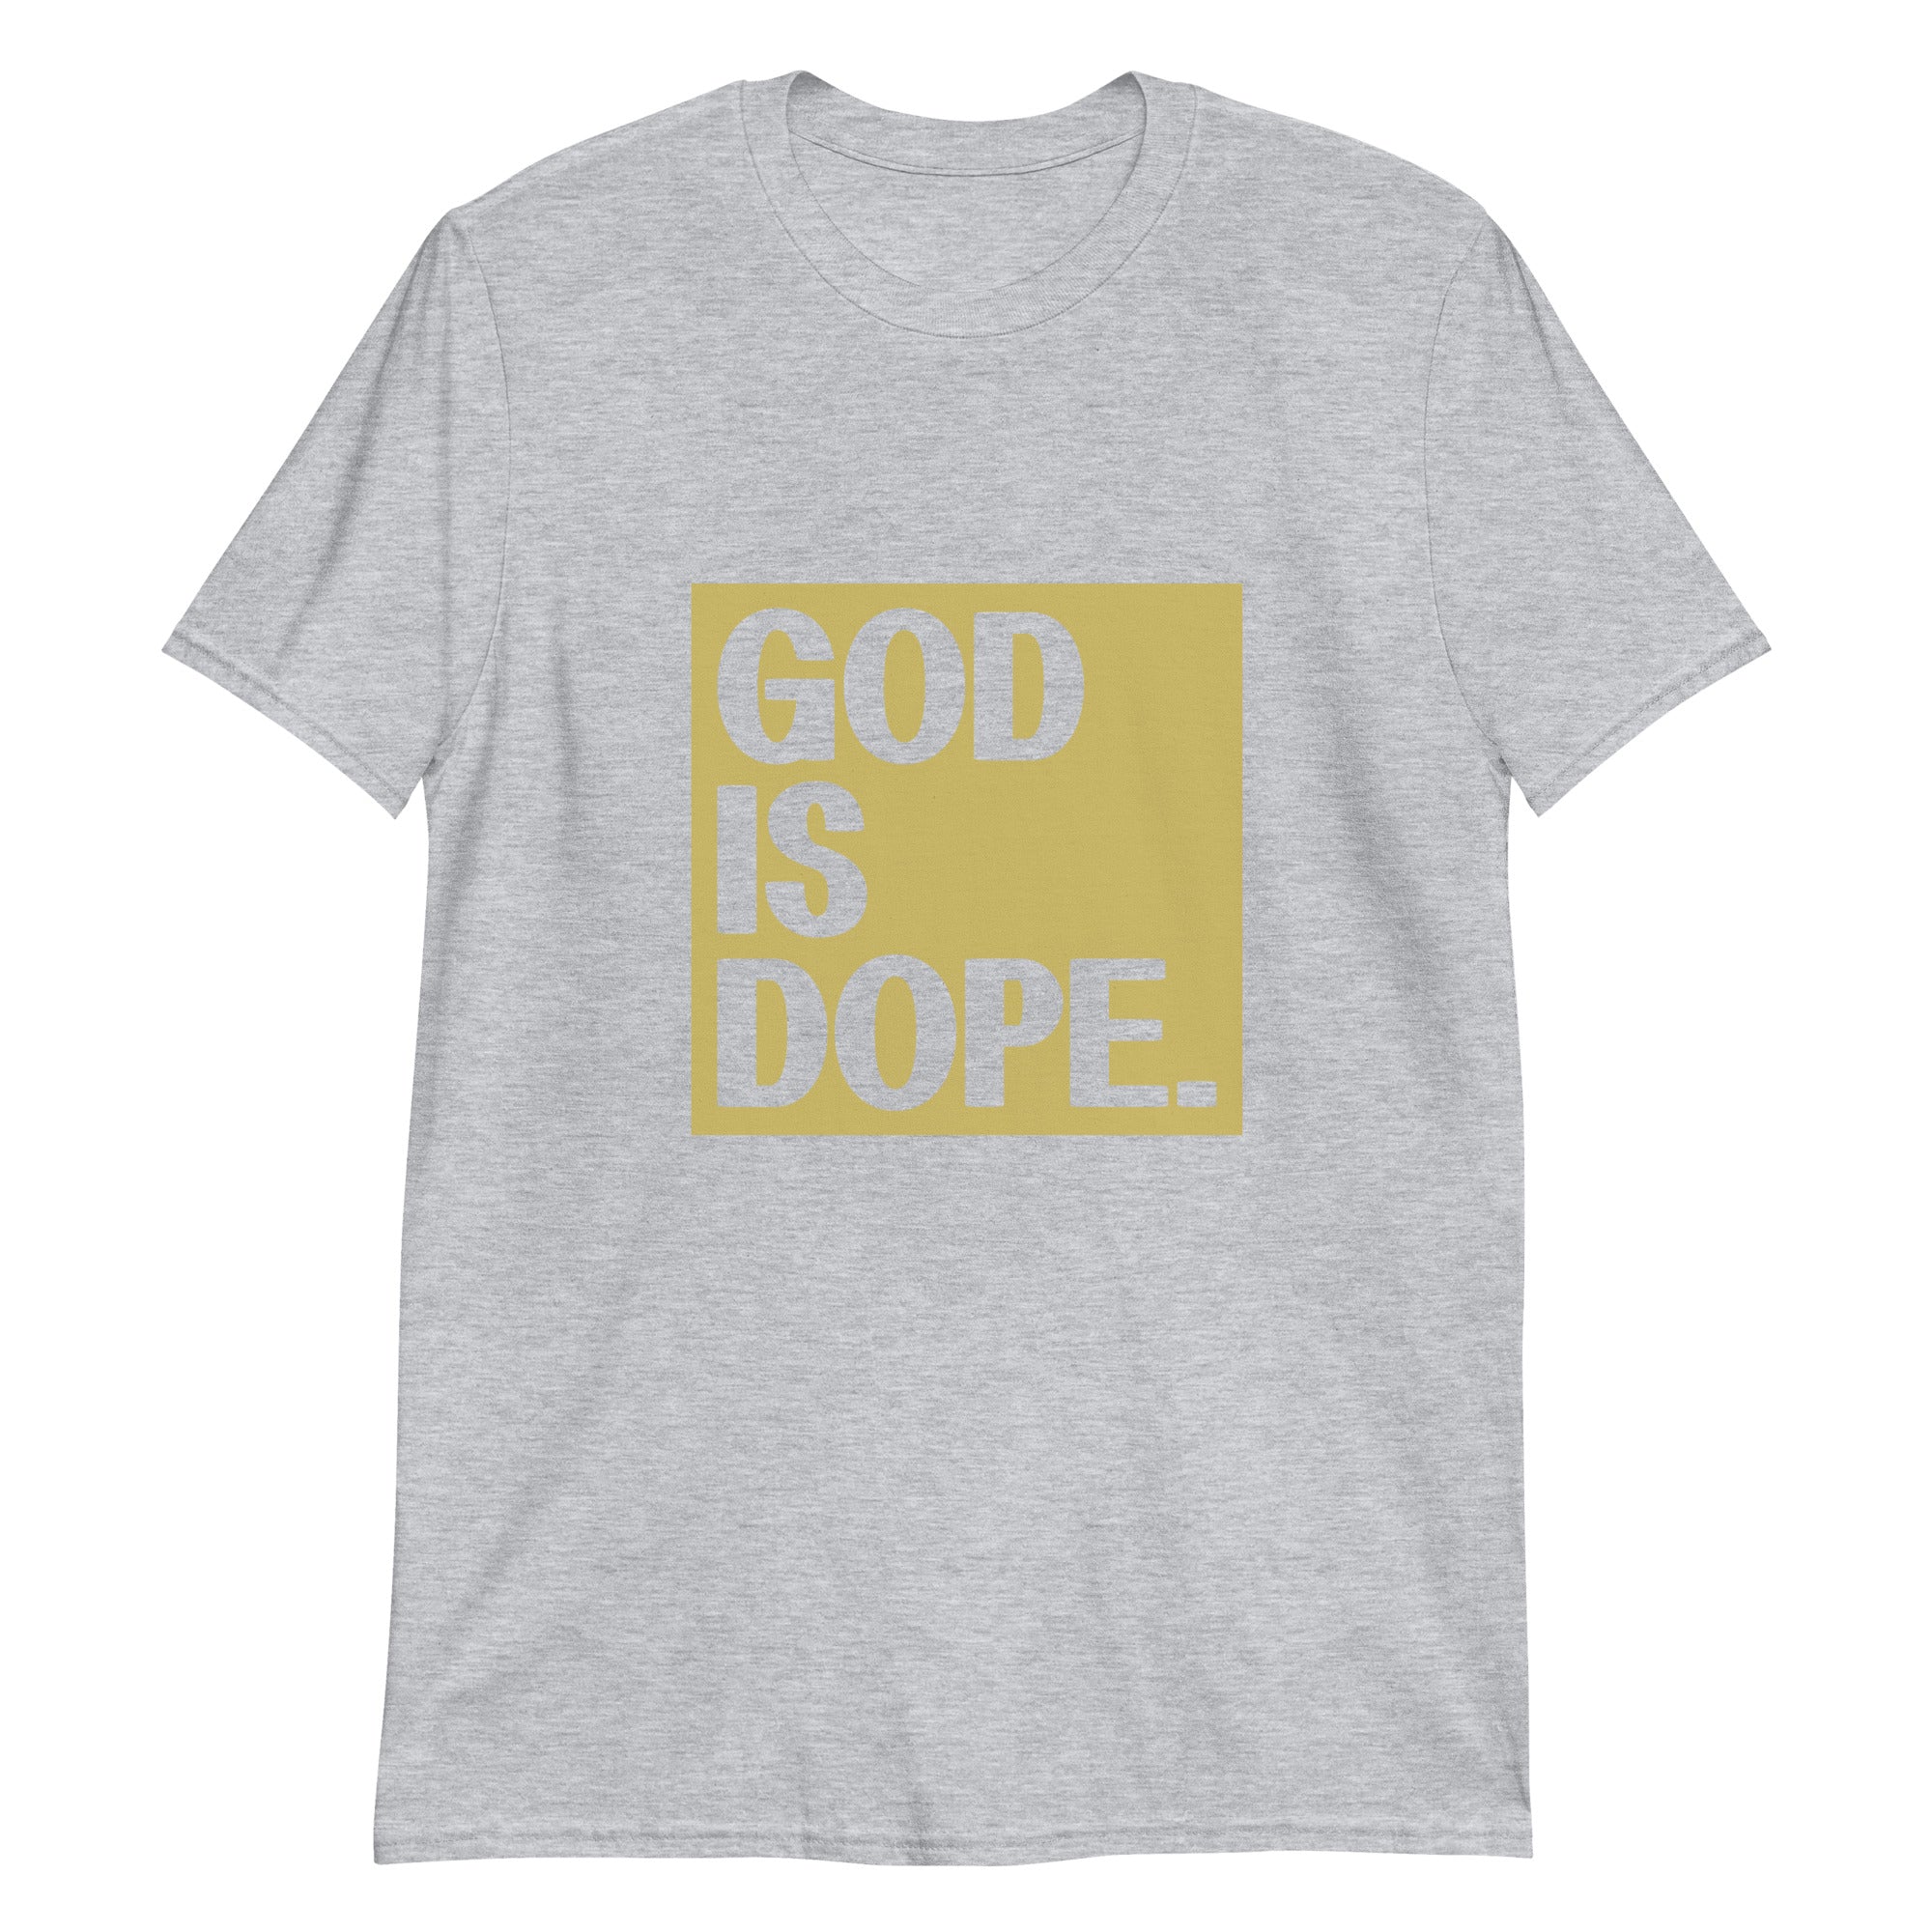 God is Dope Short-Sleeve Unisex T-Shirt